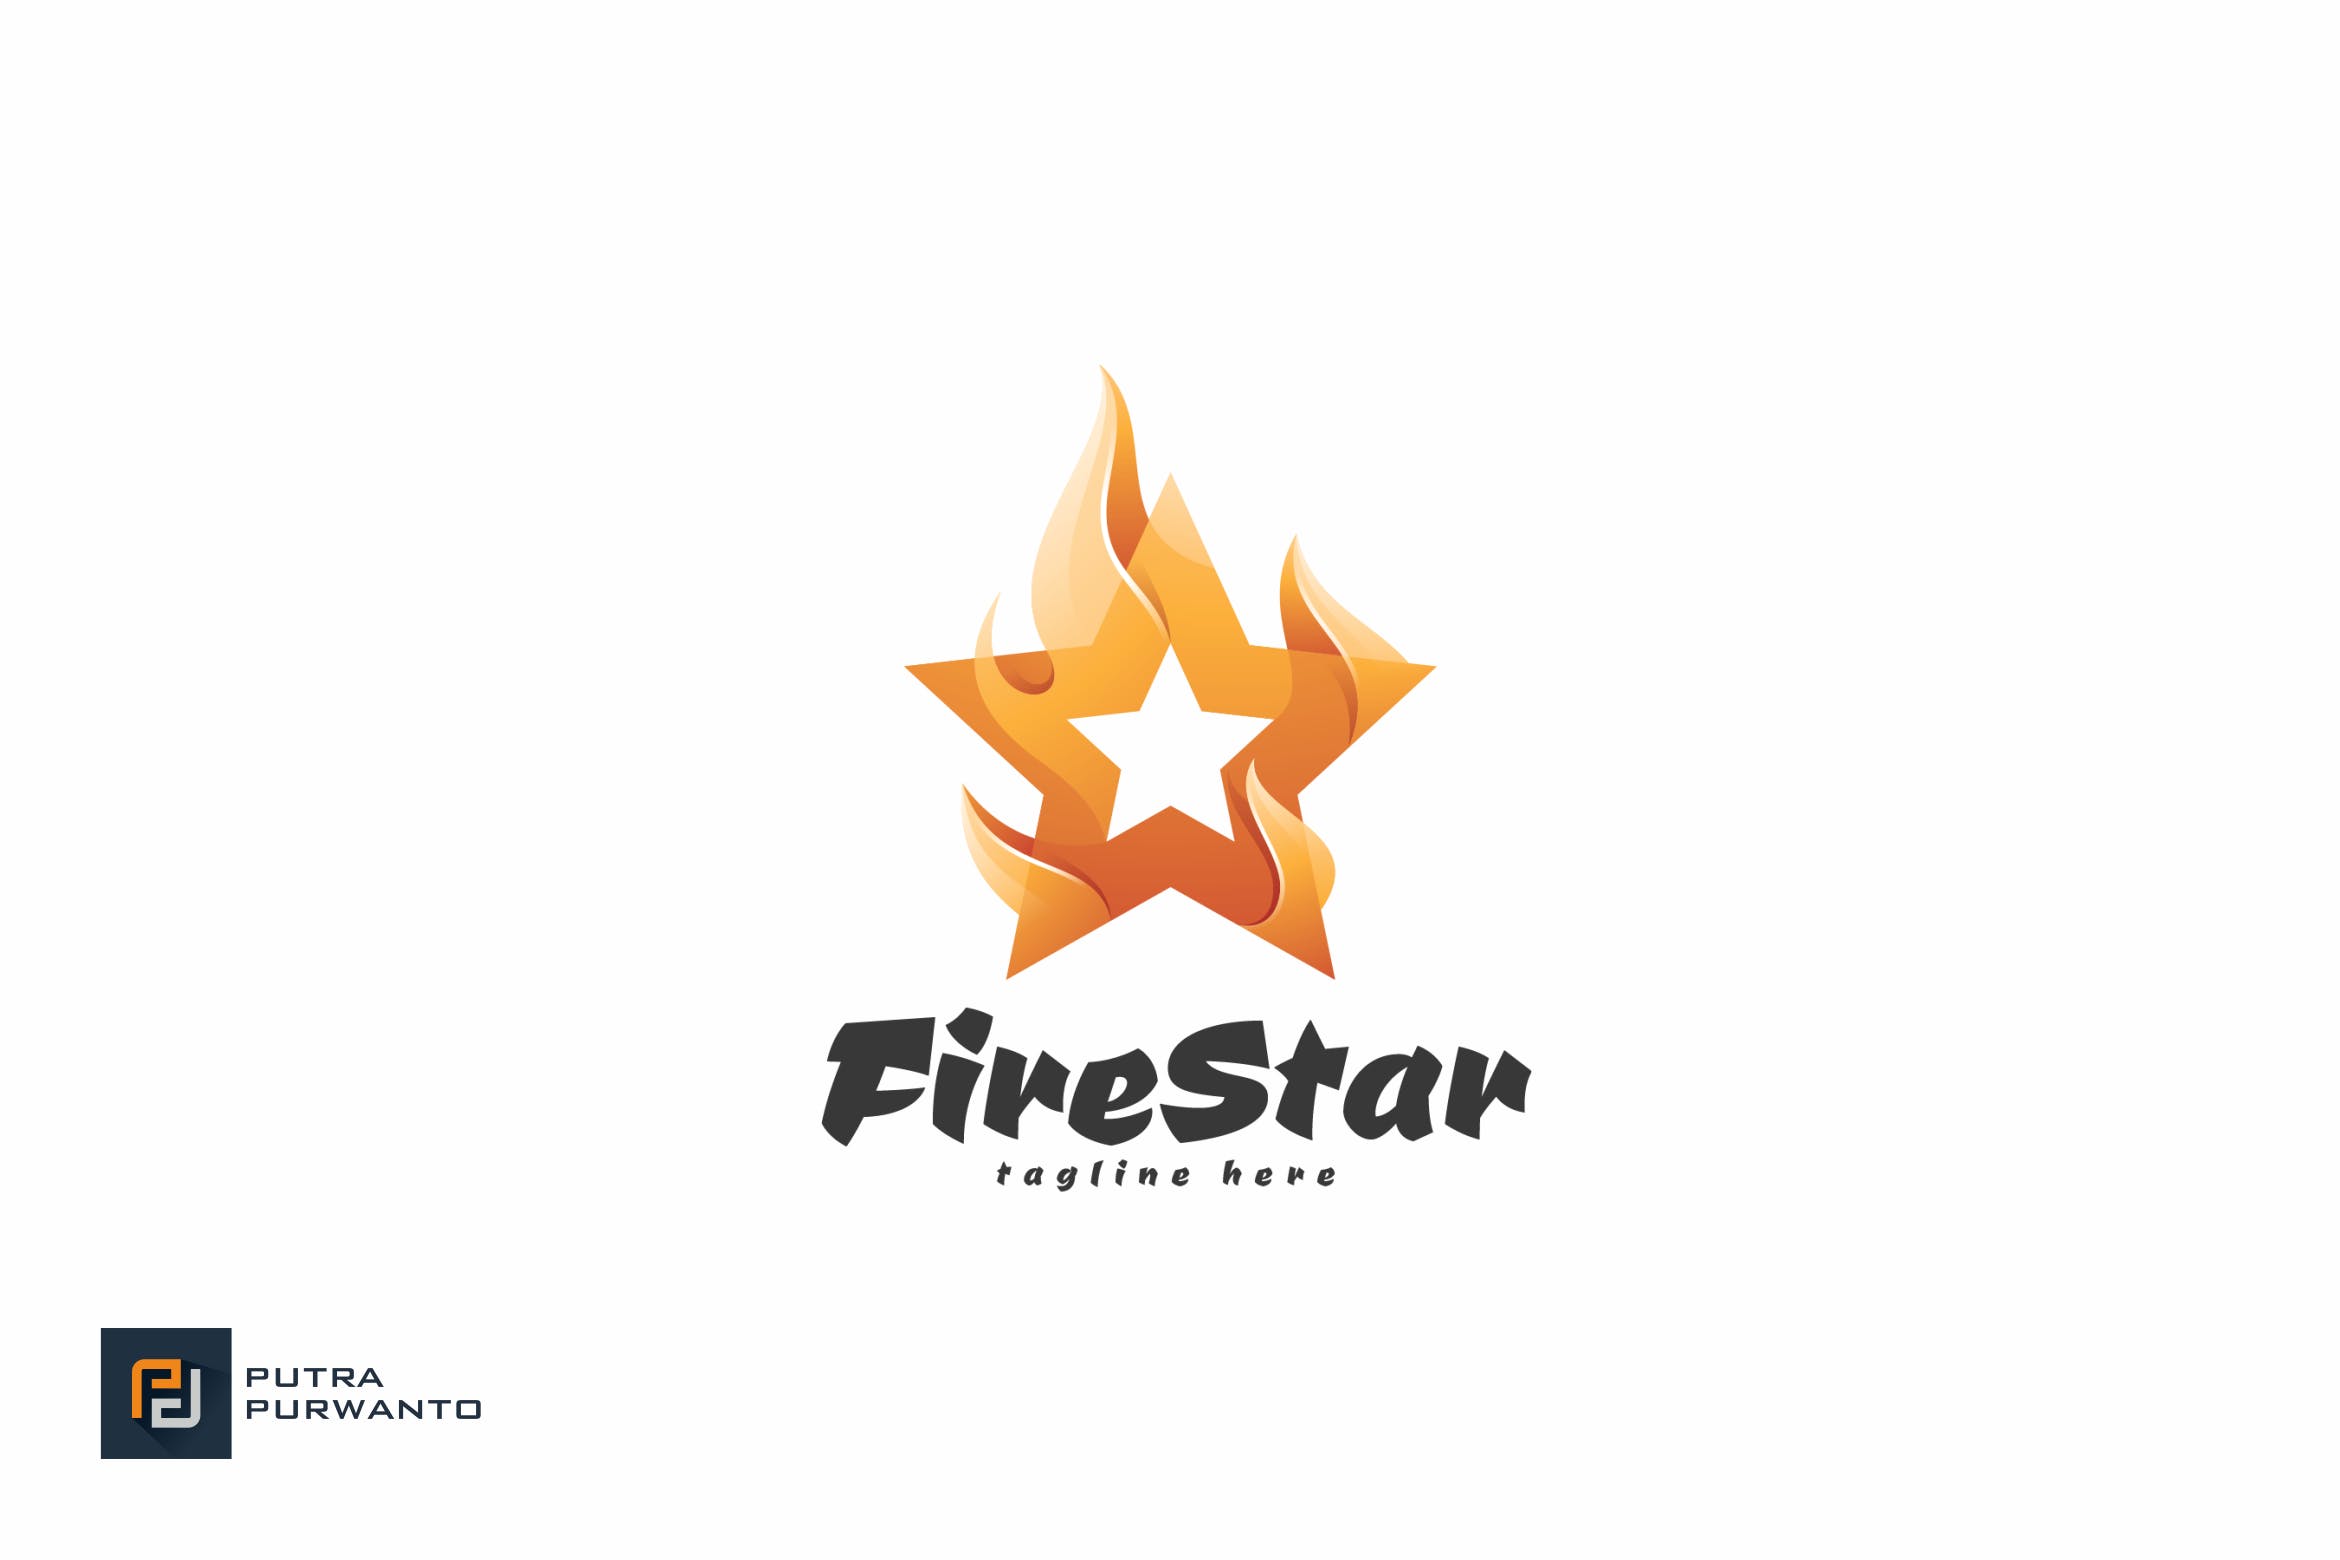 火焰五角星几何图形Logo设计第一素材精选模板 Fire Star – Logo Template插图